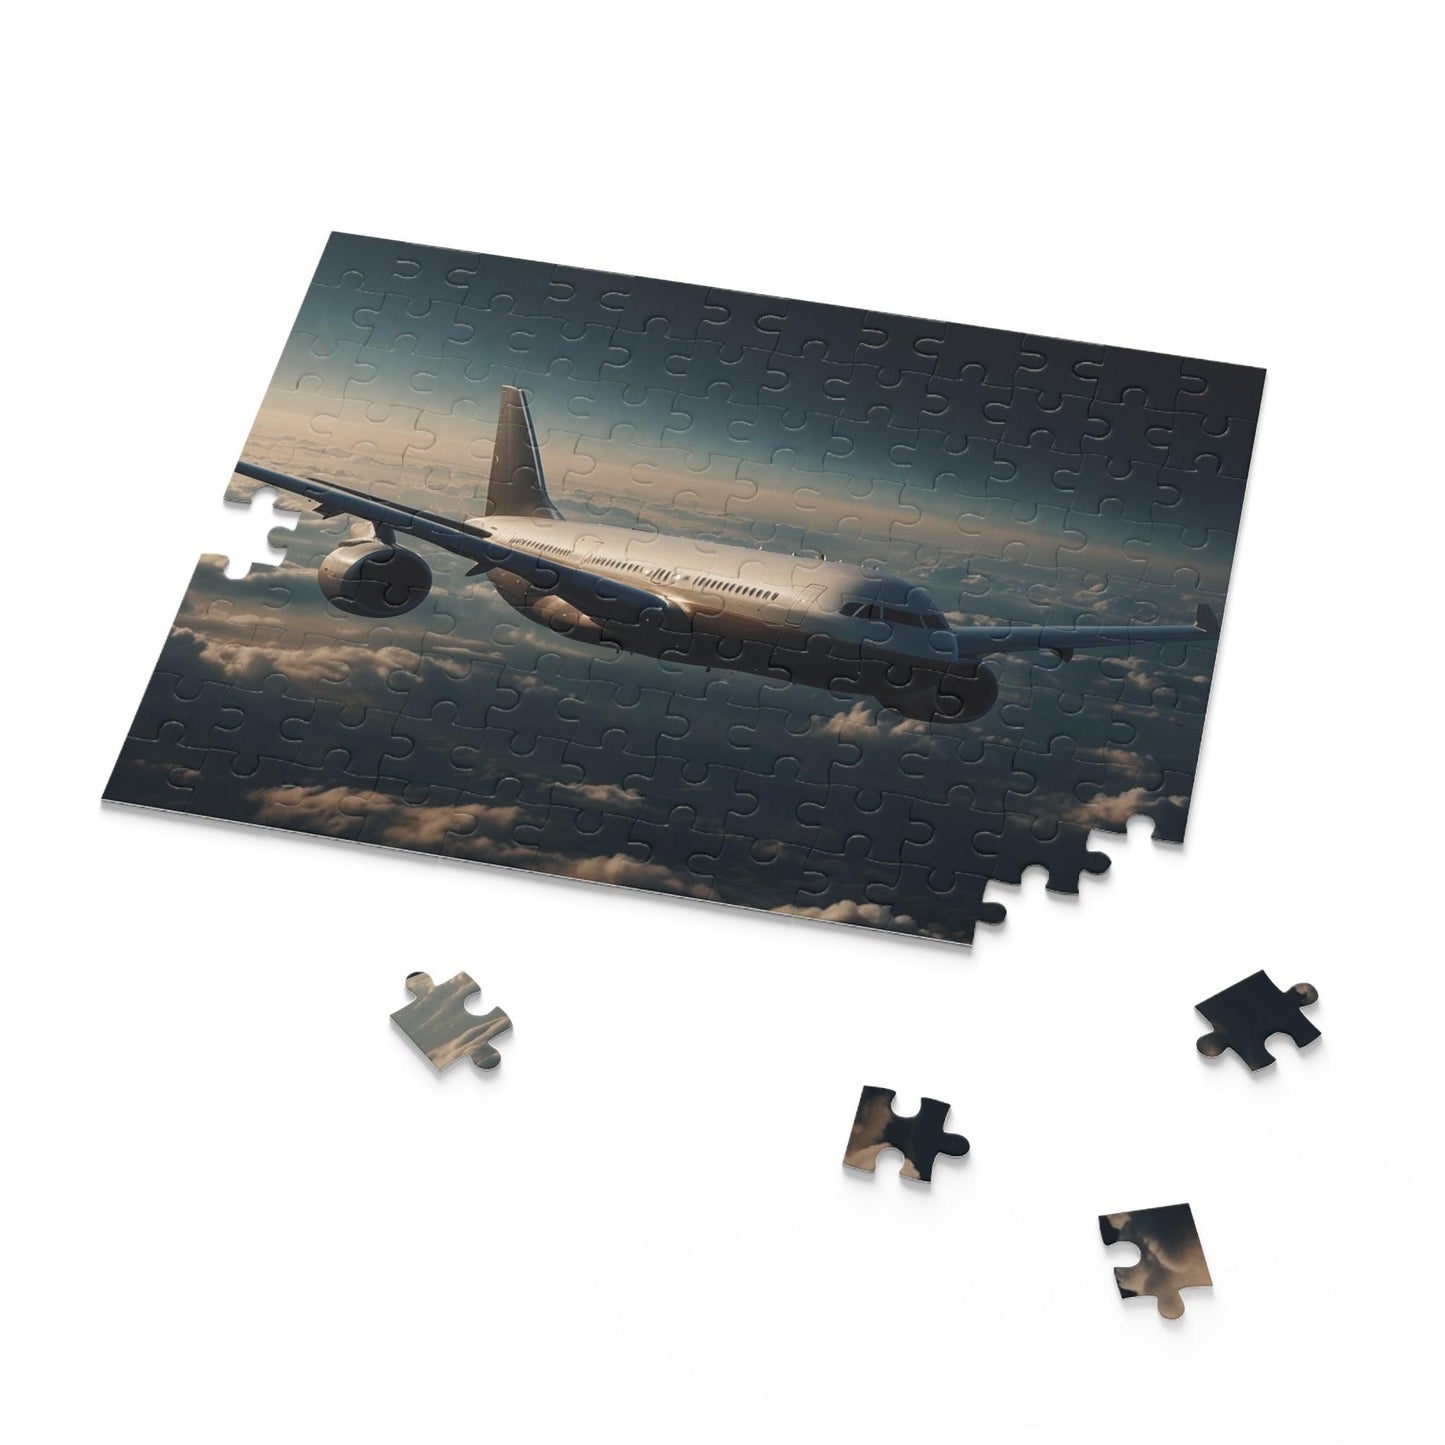 Jet-Set Voyage Puzzle (120, 252, 500-Piece) - Puzzlers Paradise